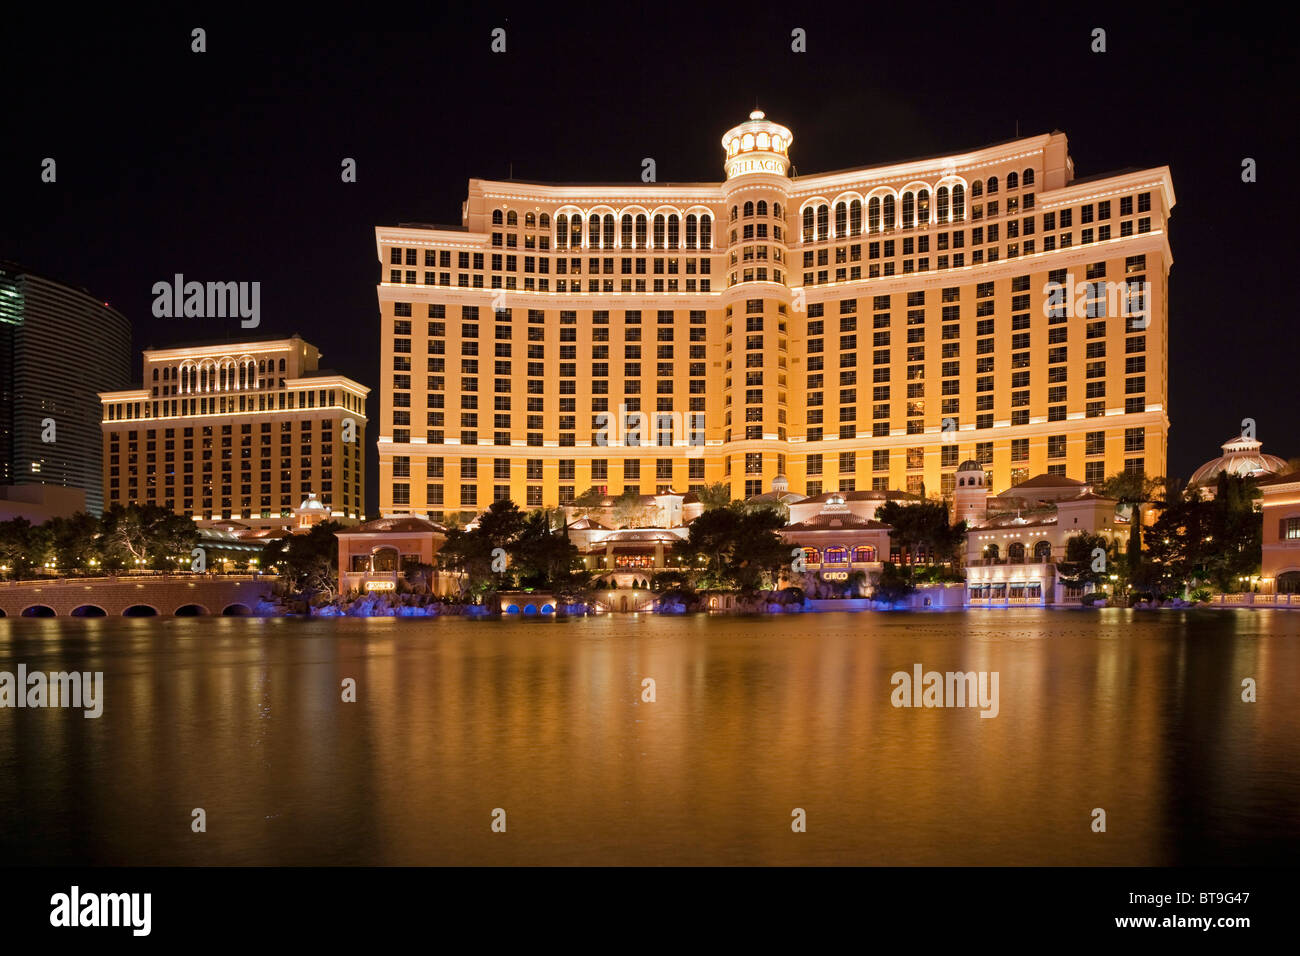 Nuit à l'hôtel Bellagio, Las Vegas, Nevada, USA Banque D'Images